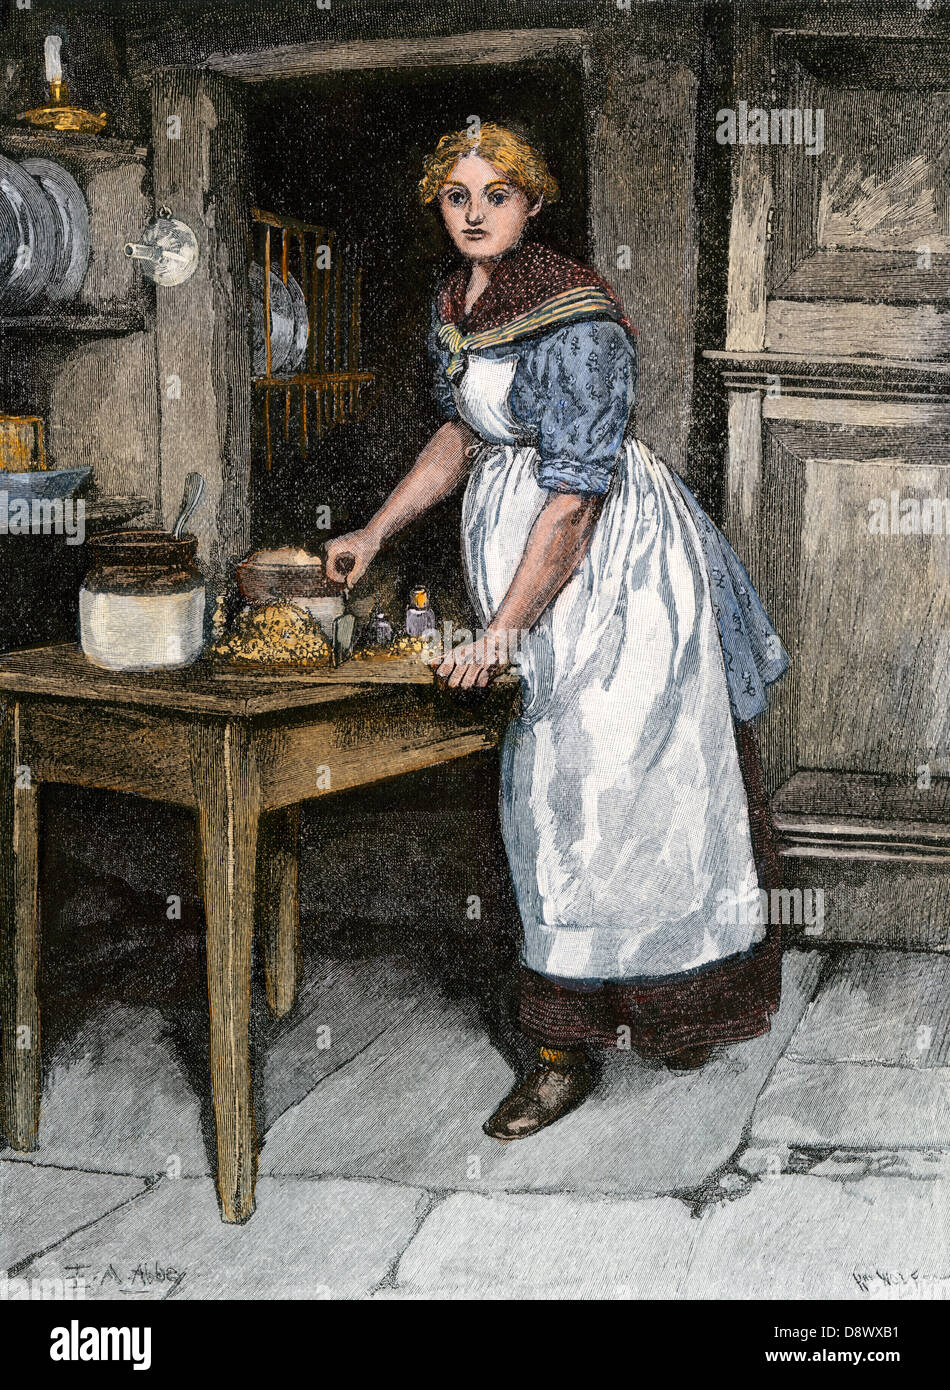 Tritare gli ingredienti per haggis in Scozia, 1800s. Colorate a mano la xilografia di E. A. Abbey illustrazione Foto Stock